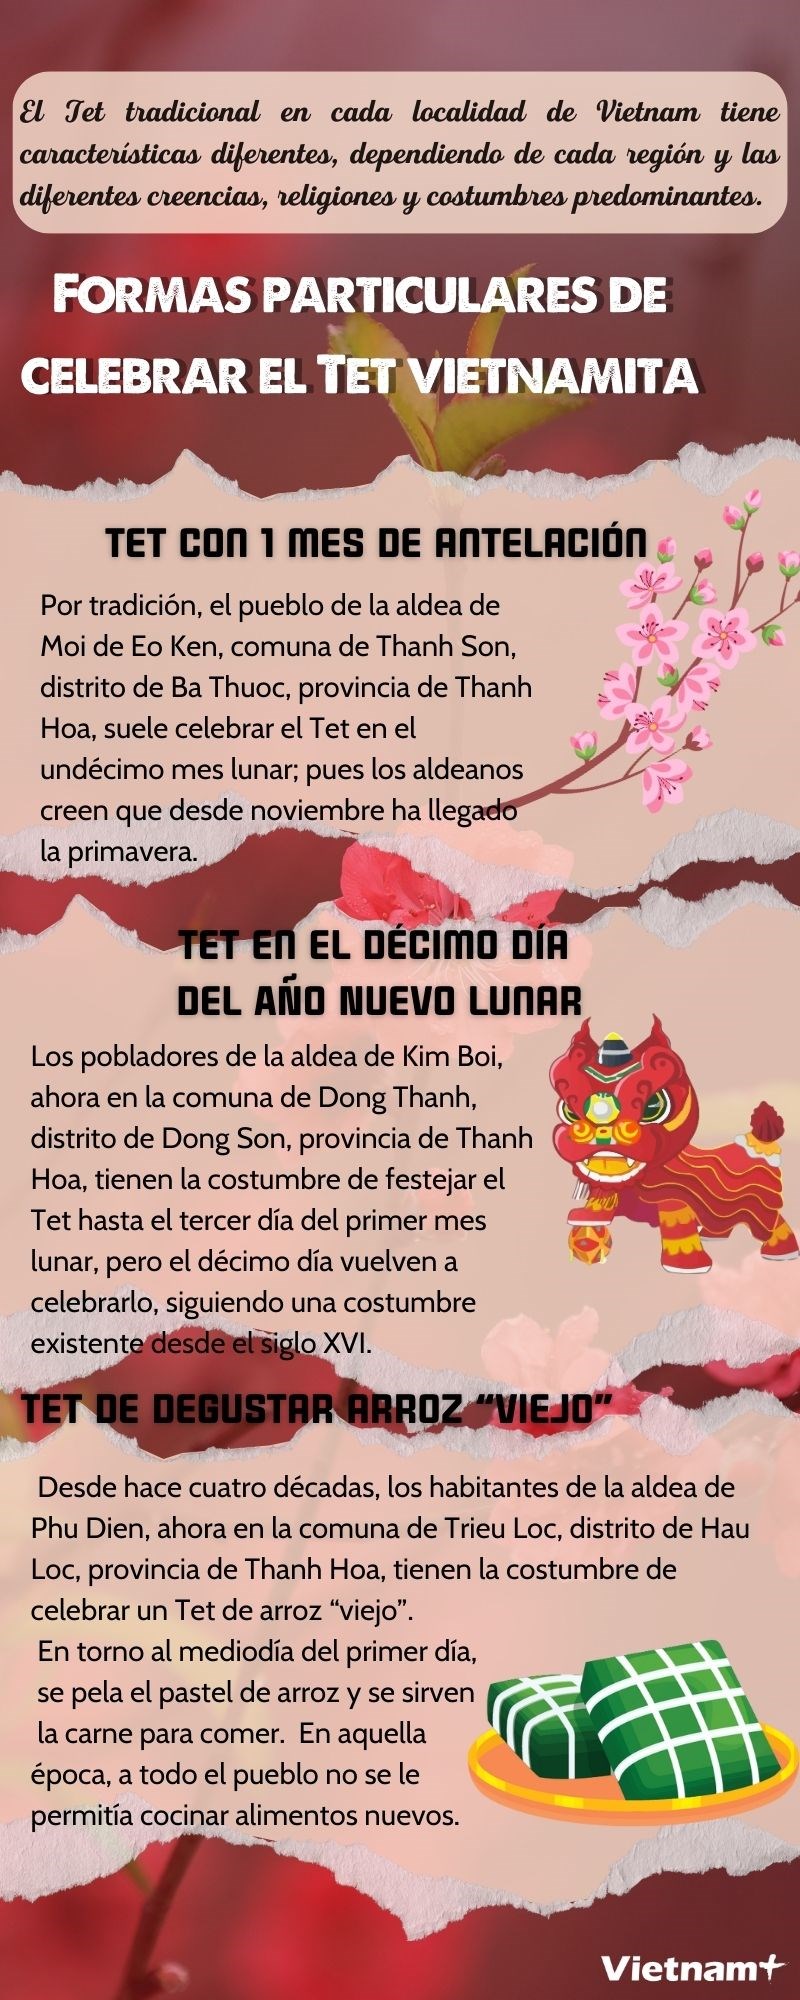 Formas particulares de celebrar el Tet vietnamita hinh anh 1